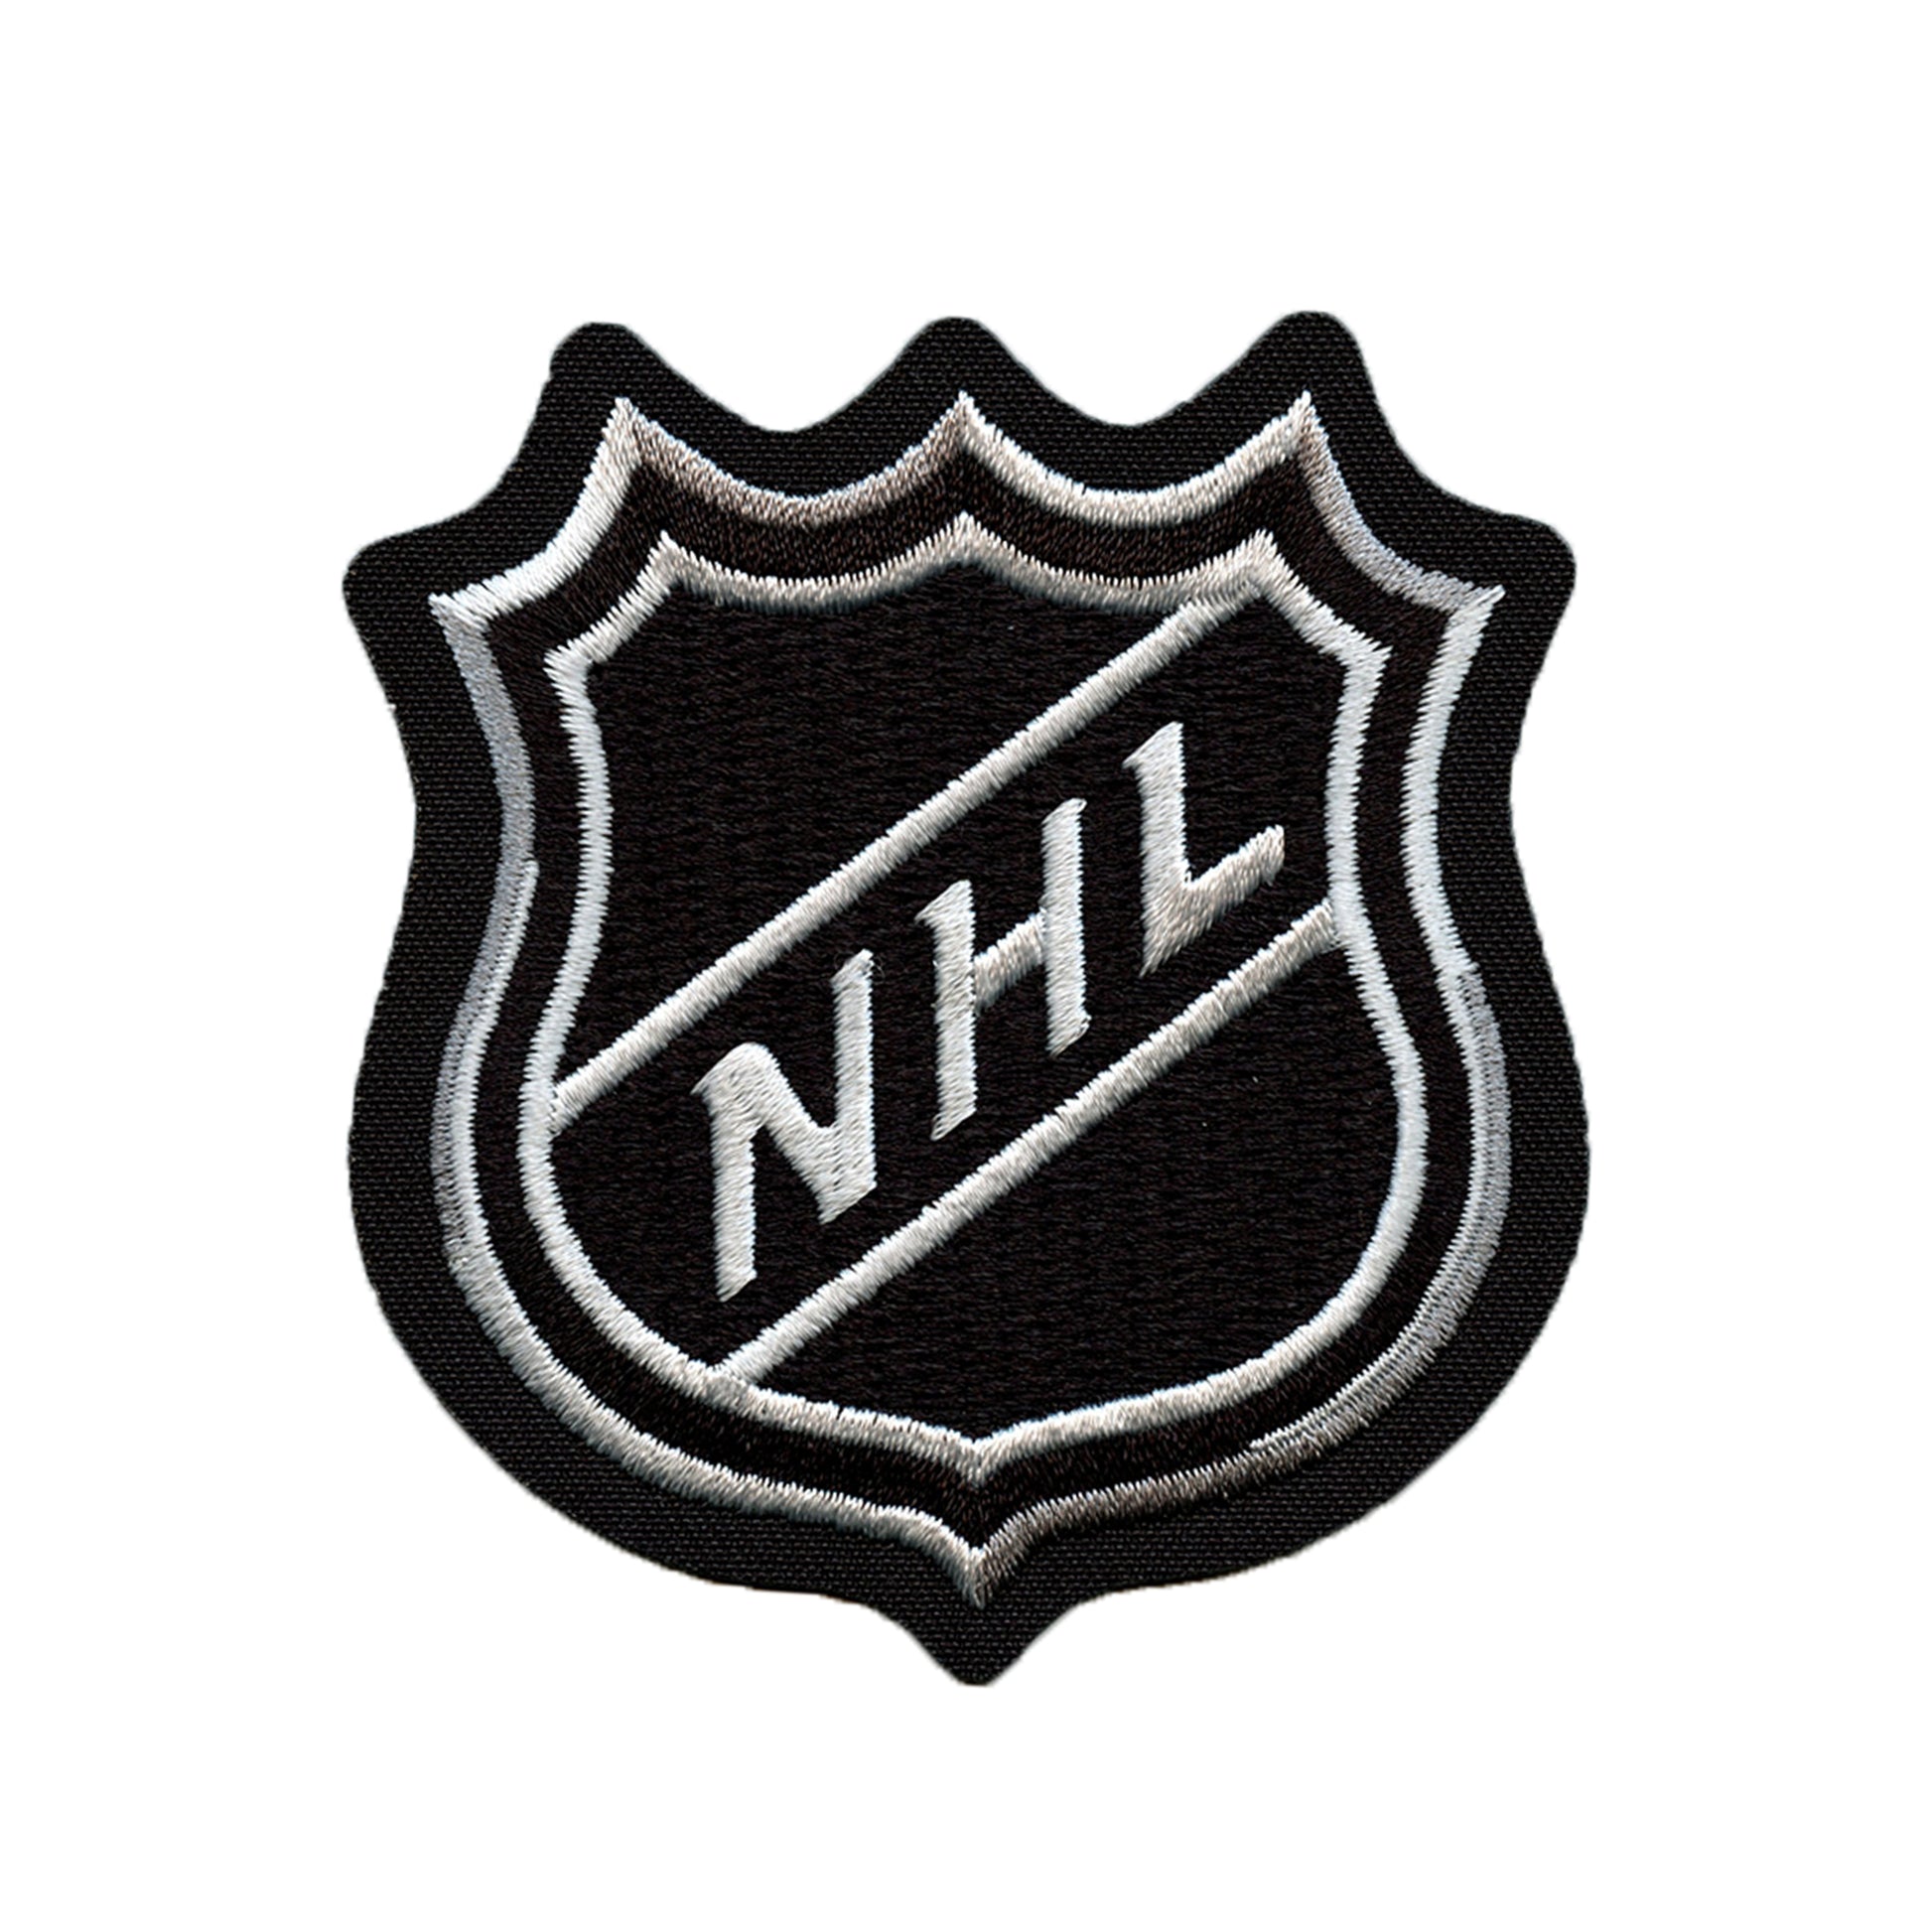 Garden State Shield White Hockey Jersey